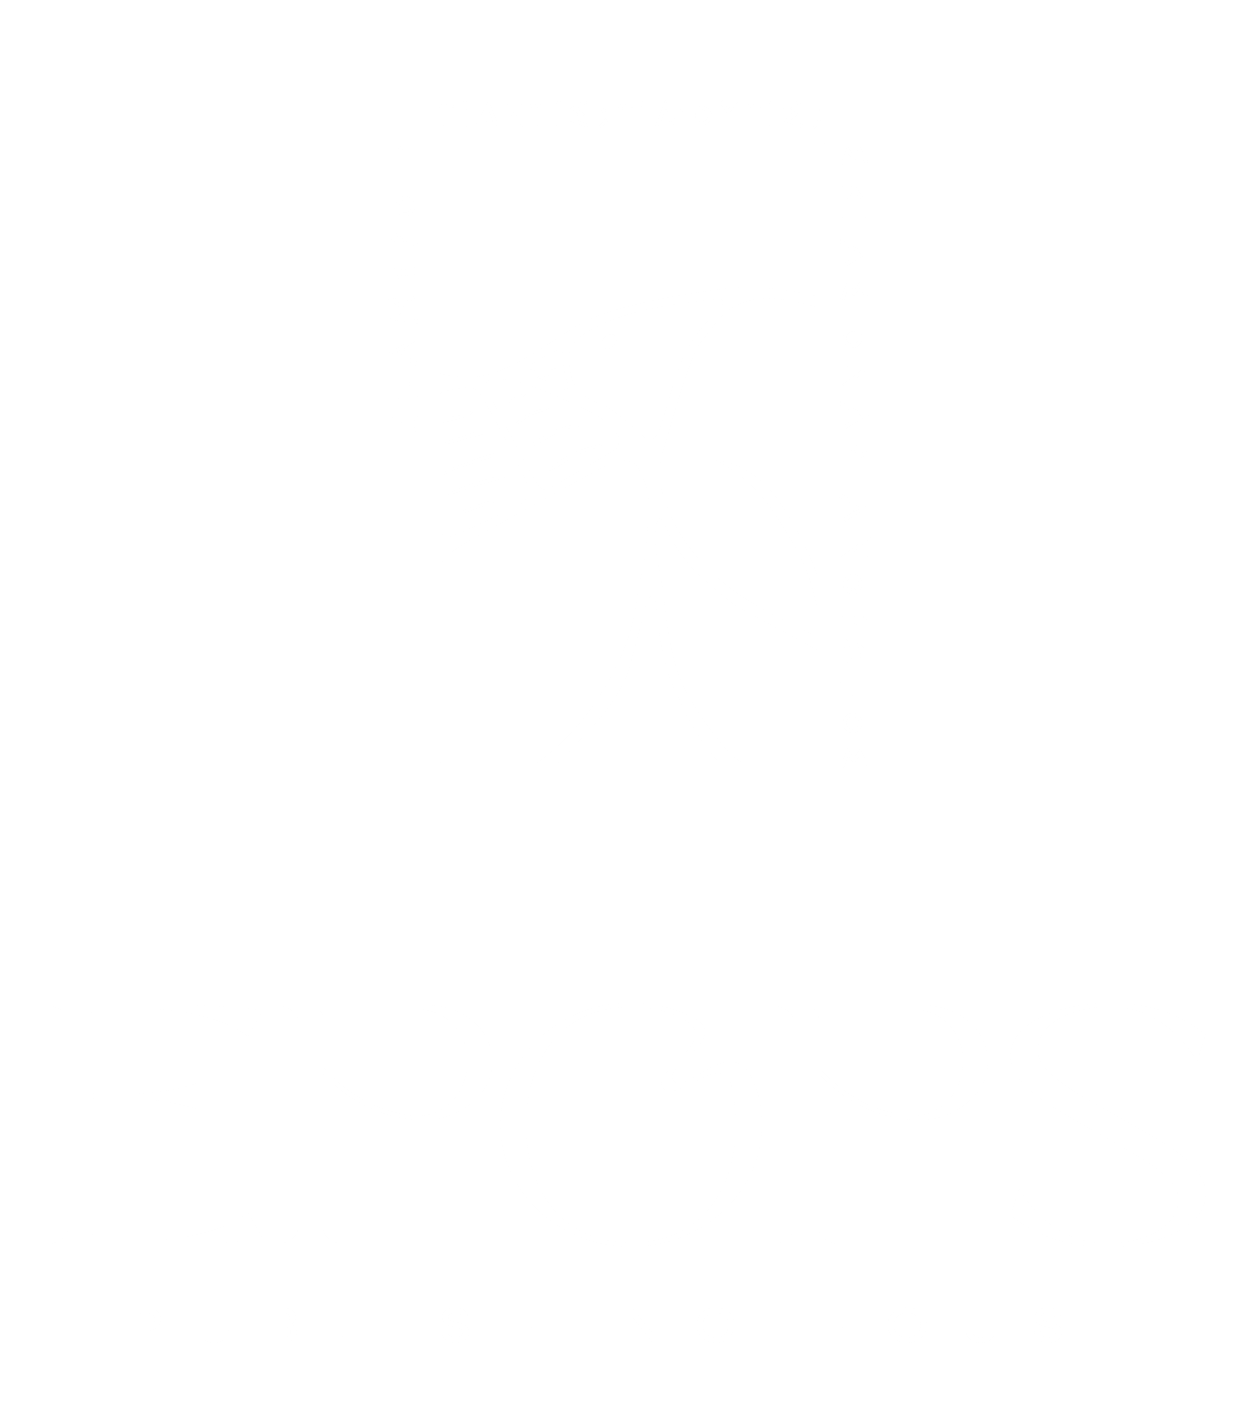 EPOPS Publishing House